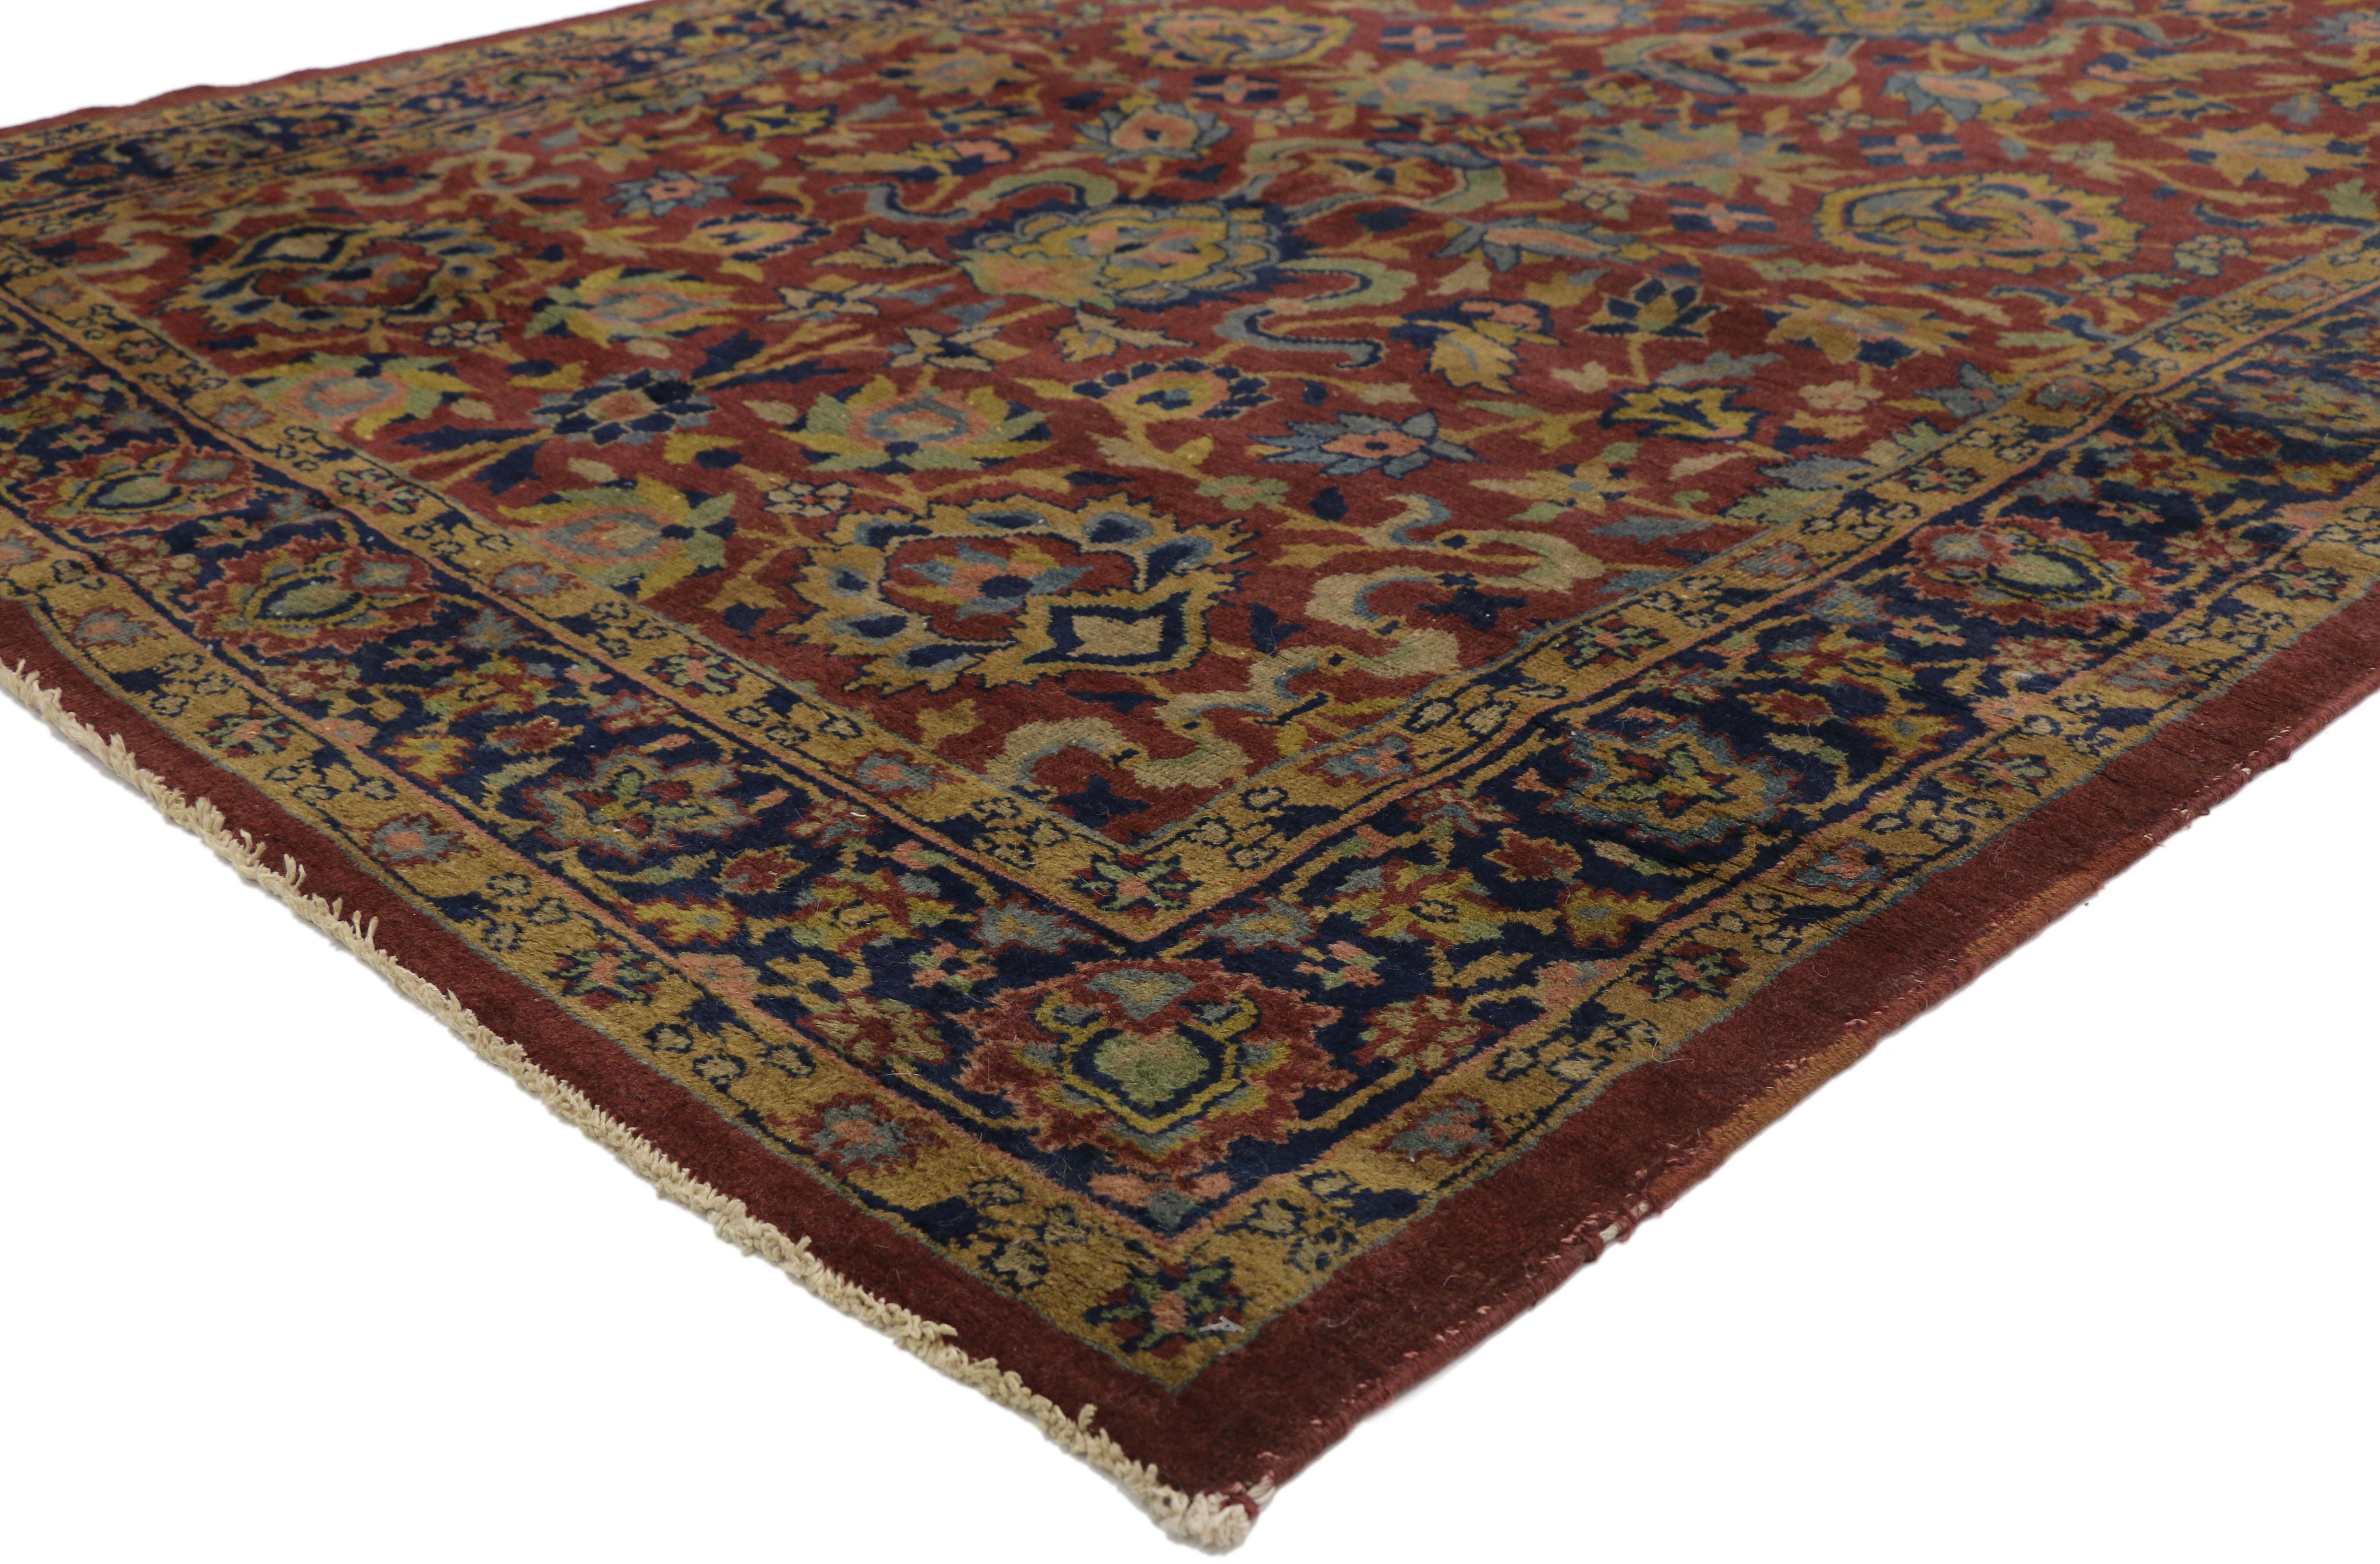 72059, antiker indischer Agra William Morris inspirierter Galerieteppich im Arts & Crafts Stil. Mit seinen architektonischen Elementen in naturgetreuen Formen und erdfarbenen Tönen verkörpert dieser handgeknüpfte, antike indische